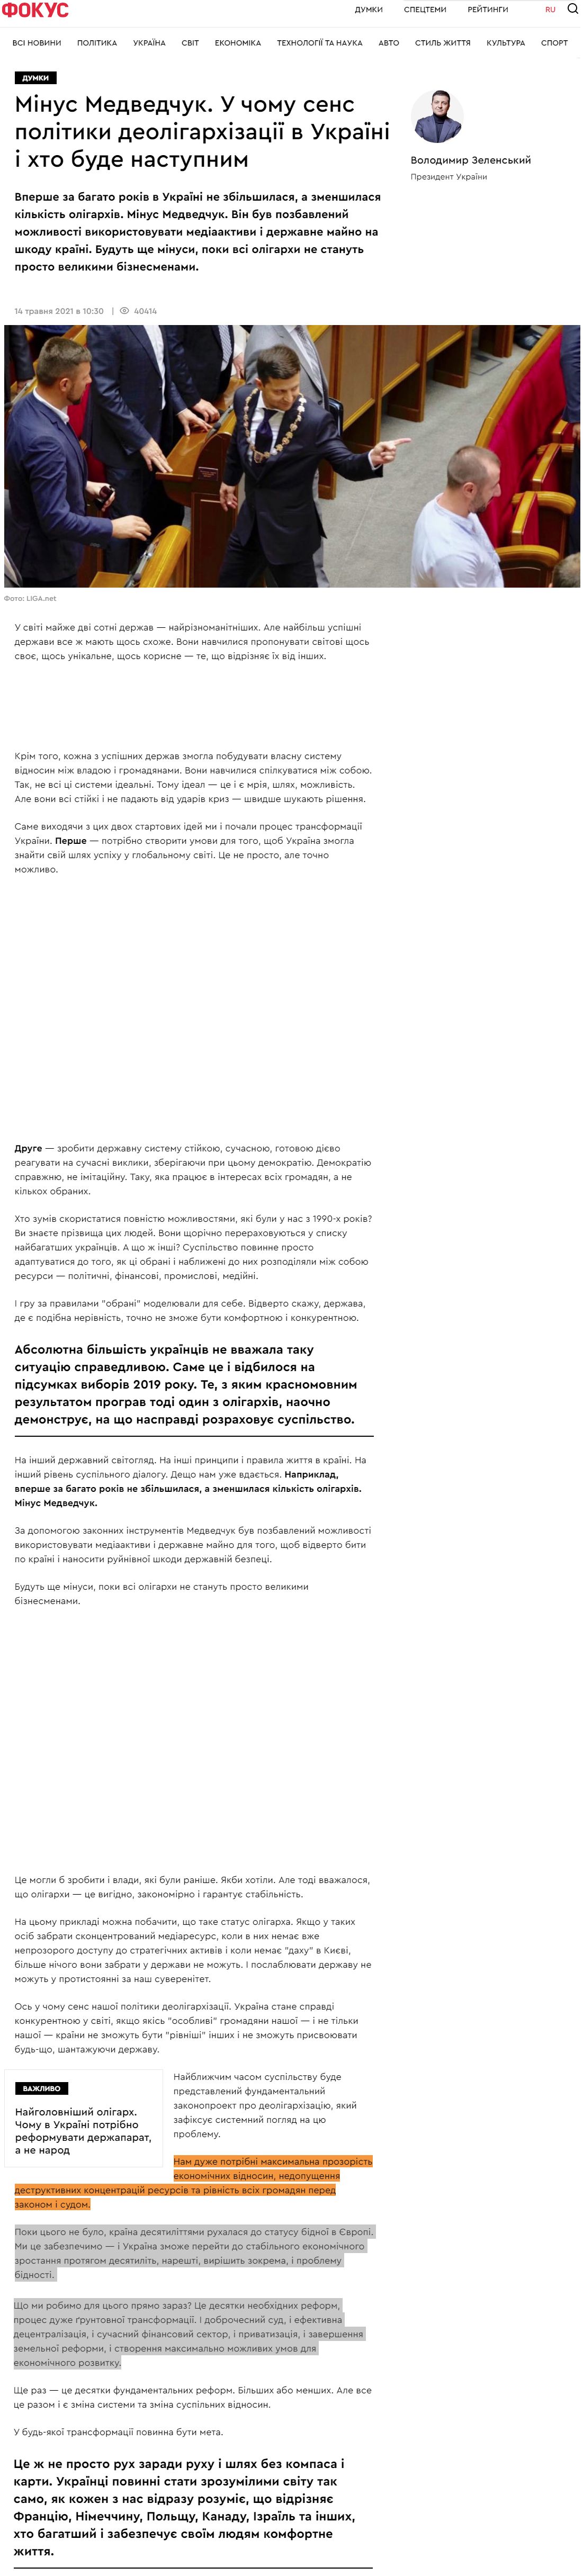 https://focus.ua/uk/opinions/482442-kolonka-zelenskogo-medvedchuk-v-chem-smysl-politiki-deoligarhizacii-v-ukraine